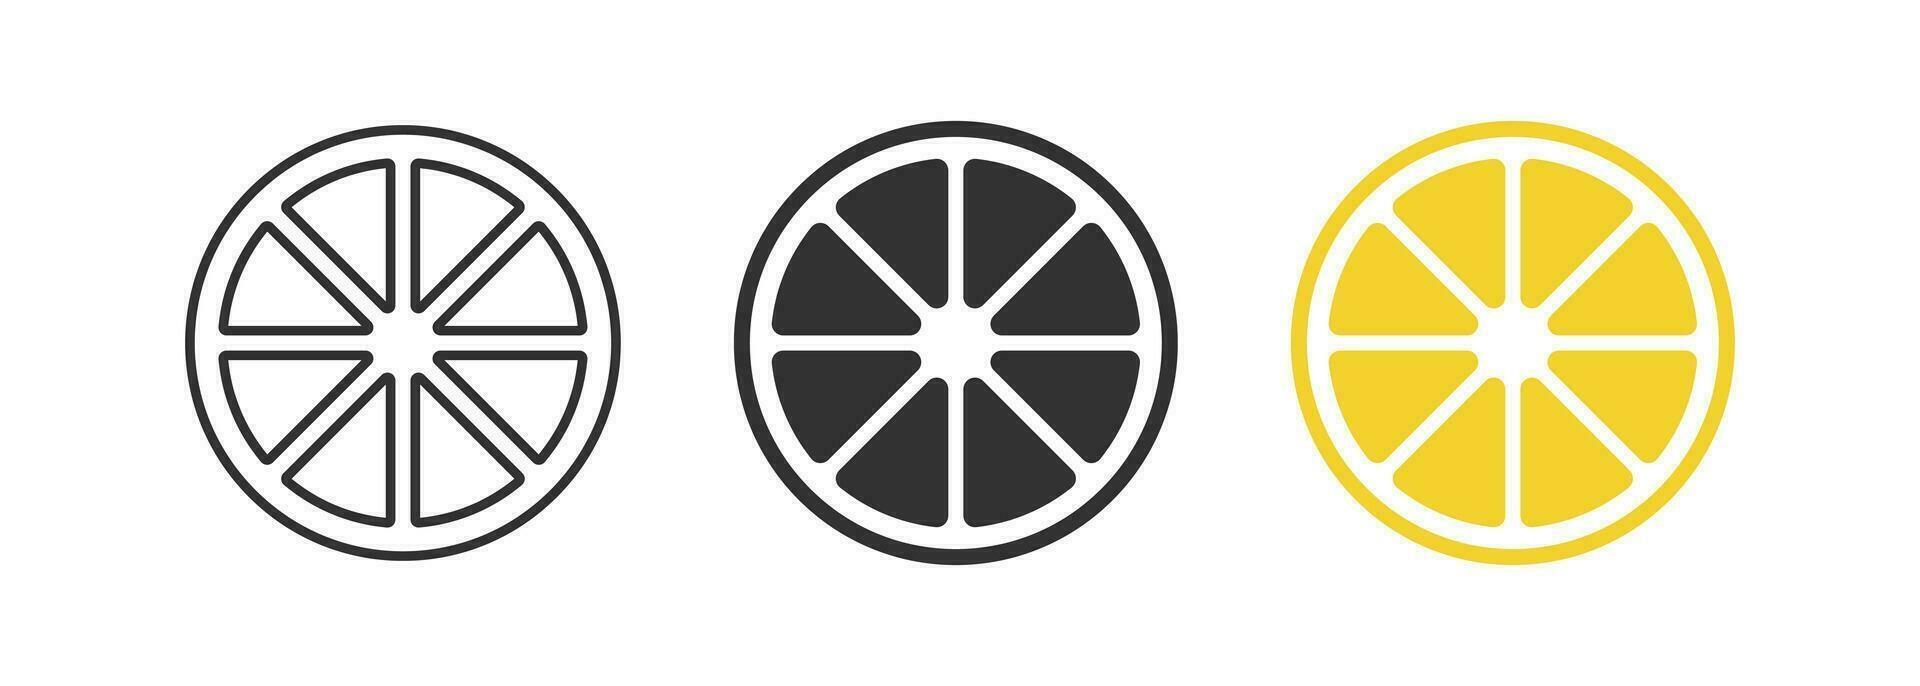 Slice of lemon icon. Citrus signs. Lime symbol. Sour fruit symbols. Grapefruit icons. Black, orange color. Vector sign.